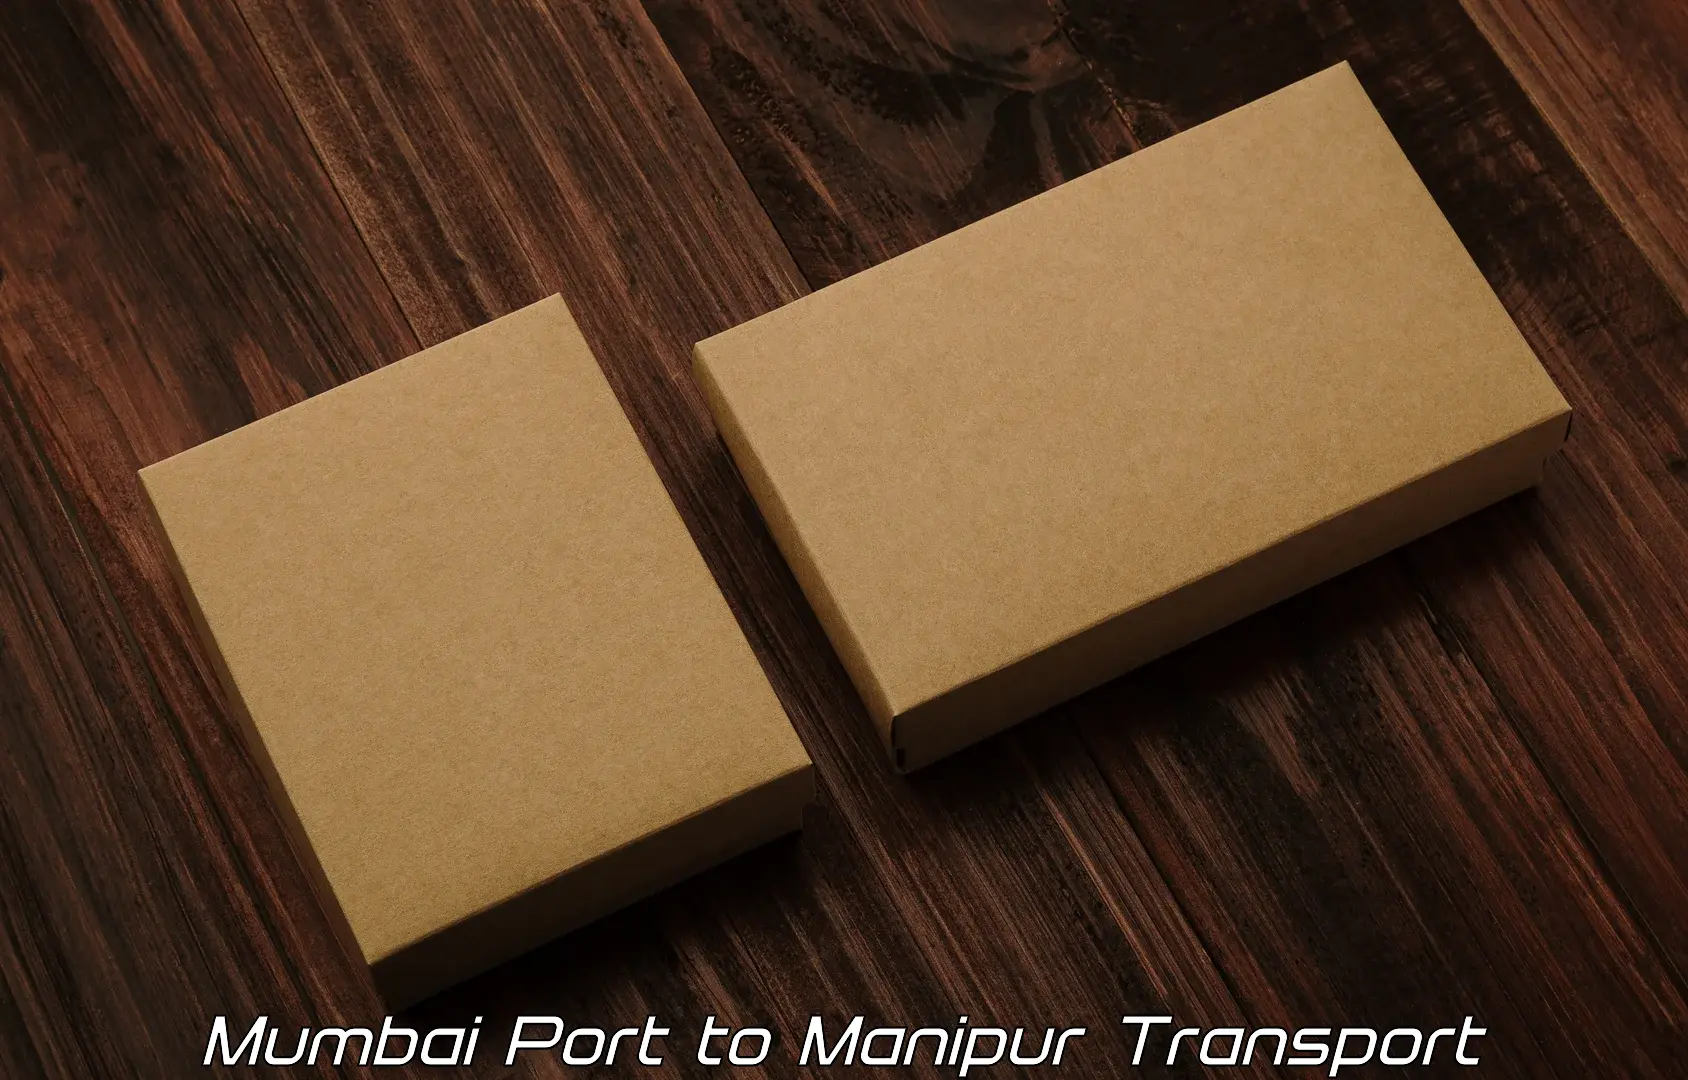 Transportation services Mumbai Port to Tamenglong